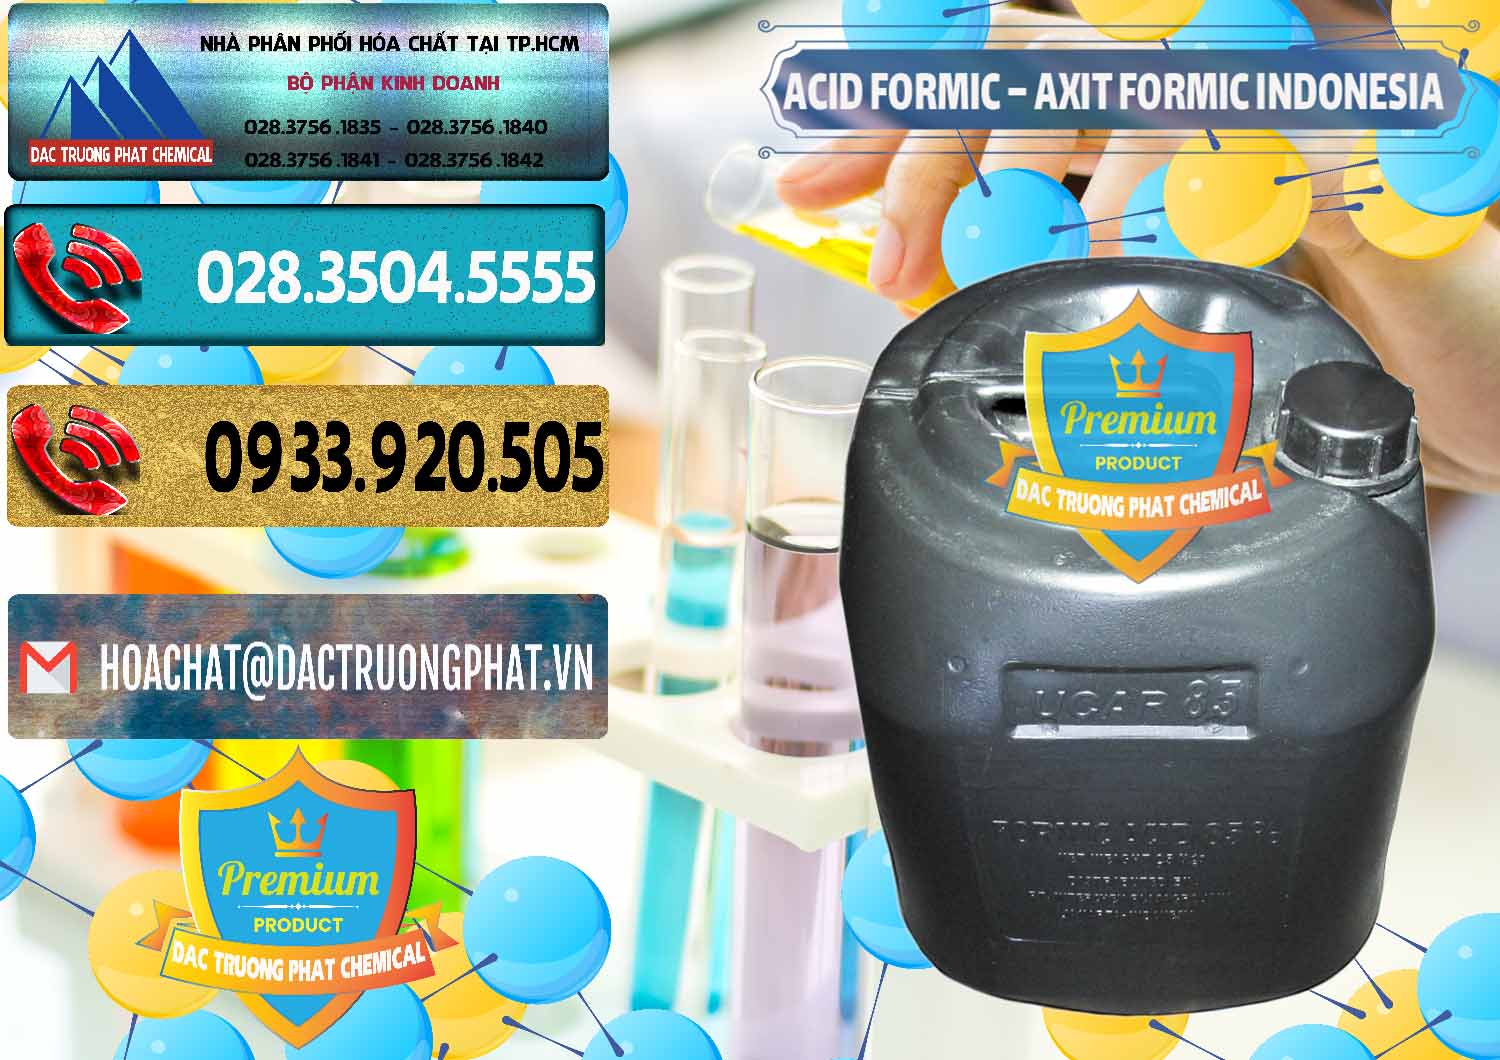 Kinh doanh & bán Acid Formic - Axit Formic Indonesia - 0026 - Cty chuyên kinh doanh & cung cấp hóa chất tại TP.HCM - hoachatdetnhuom.com